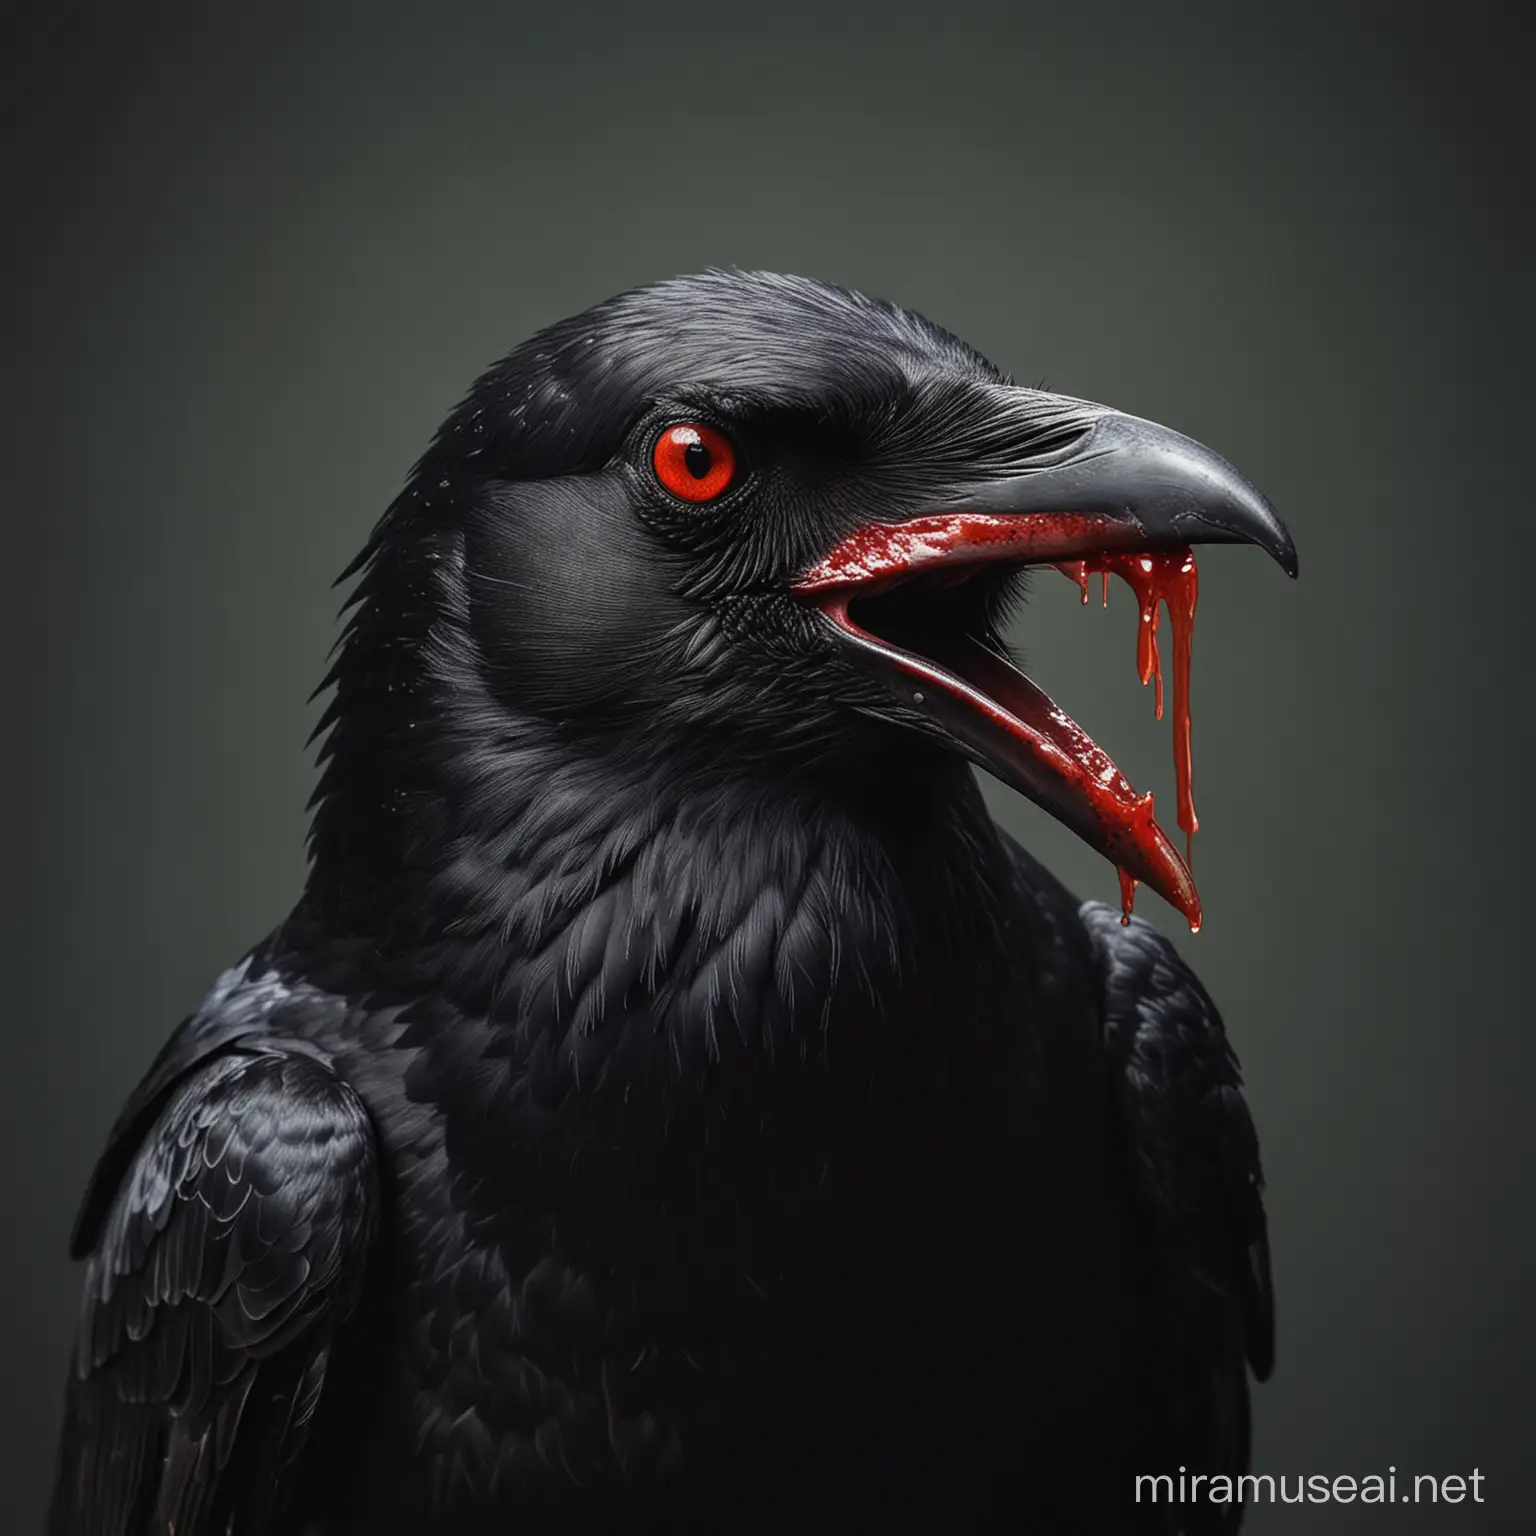 Quero uma imagem de um corvo com olhos vermelhos e sangue escorrendo do bico, luz dramática e fundo simples